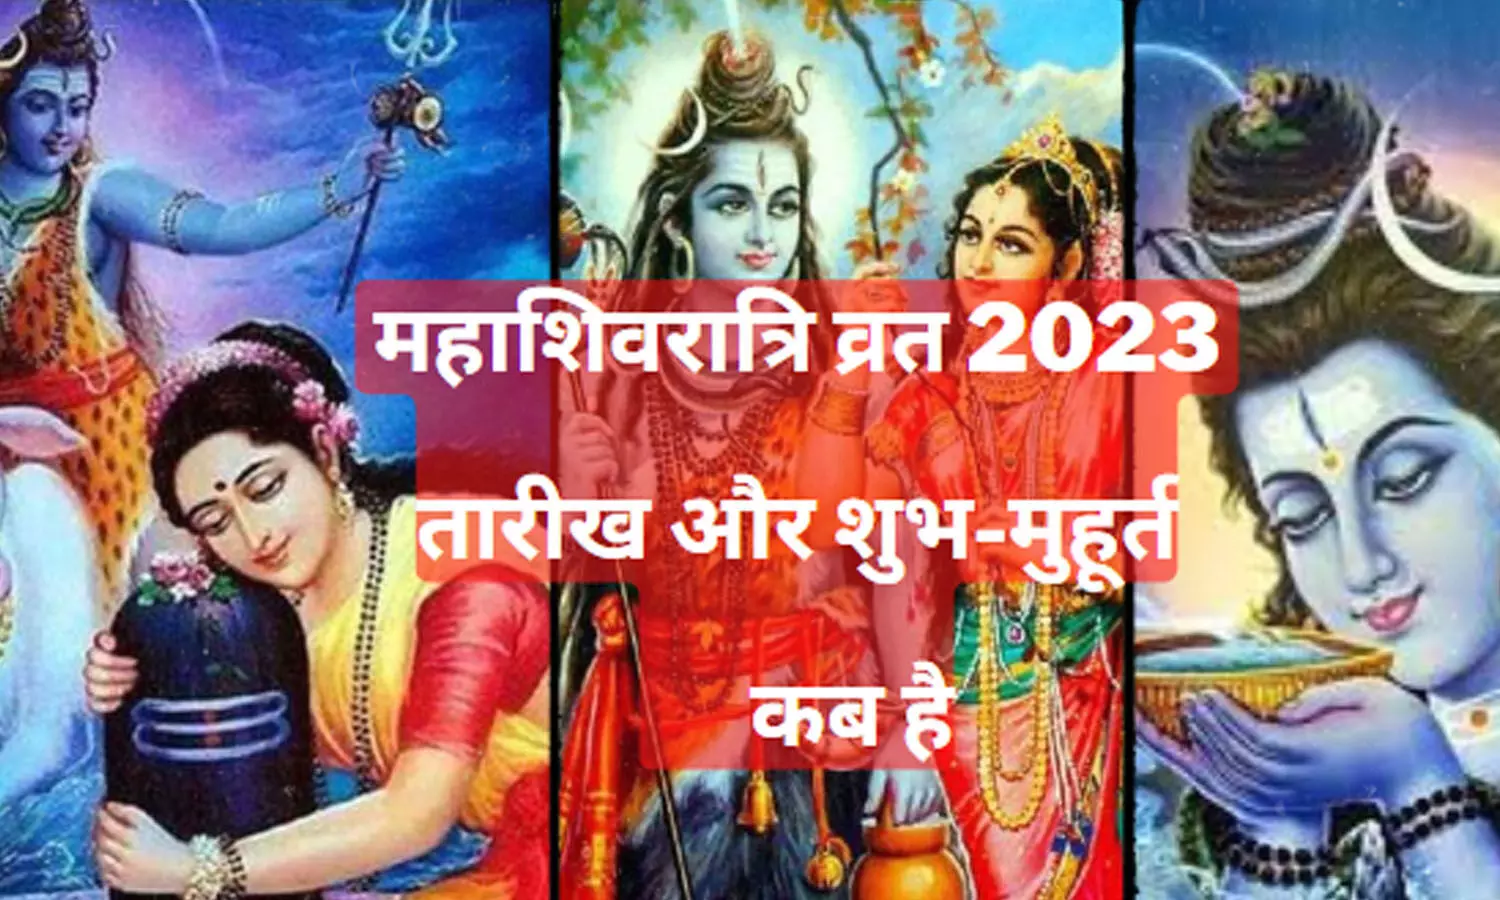 Maha Shivratri 2023 Kab Hai Date : 2023 में महाशिवरात्रि कब है,जानिए सही तारीख, मुहूर्त और पारणा का समय